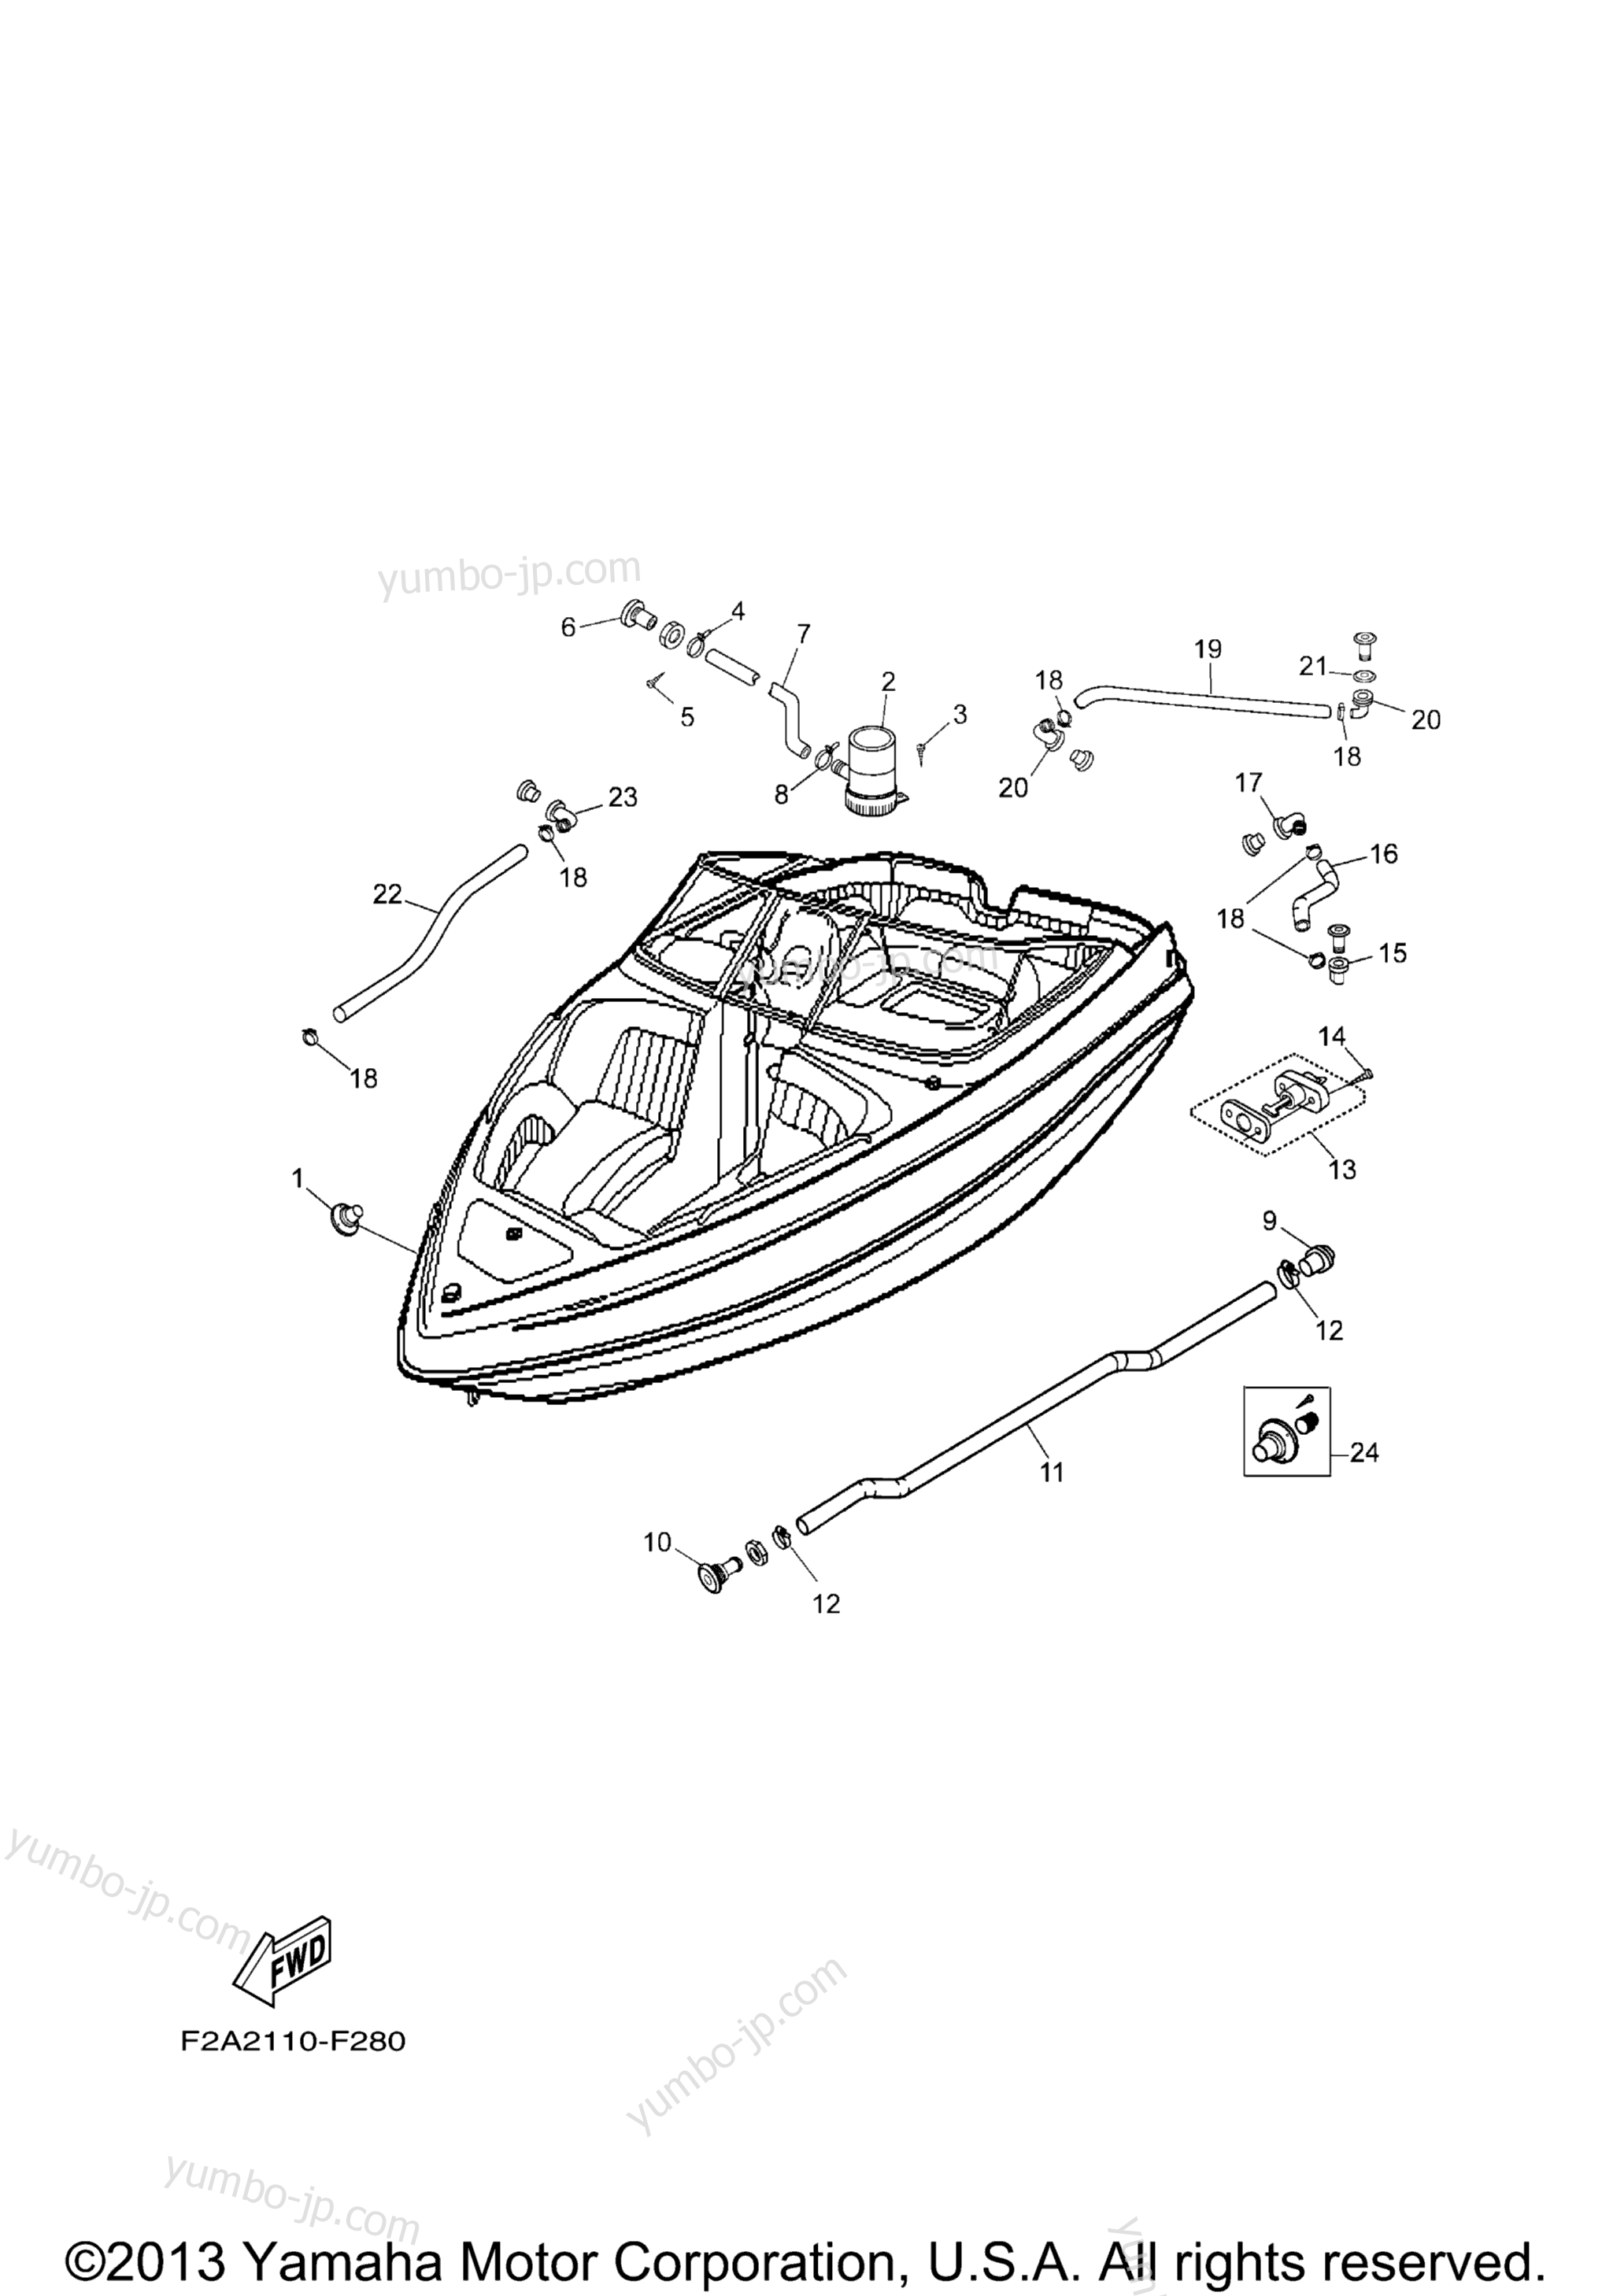 Deck Drain Fittings for boats YAMAHA AR230 HO CA & NY (SXT1100BLG) CA 2008 year